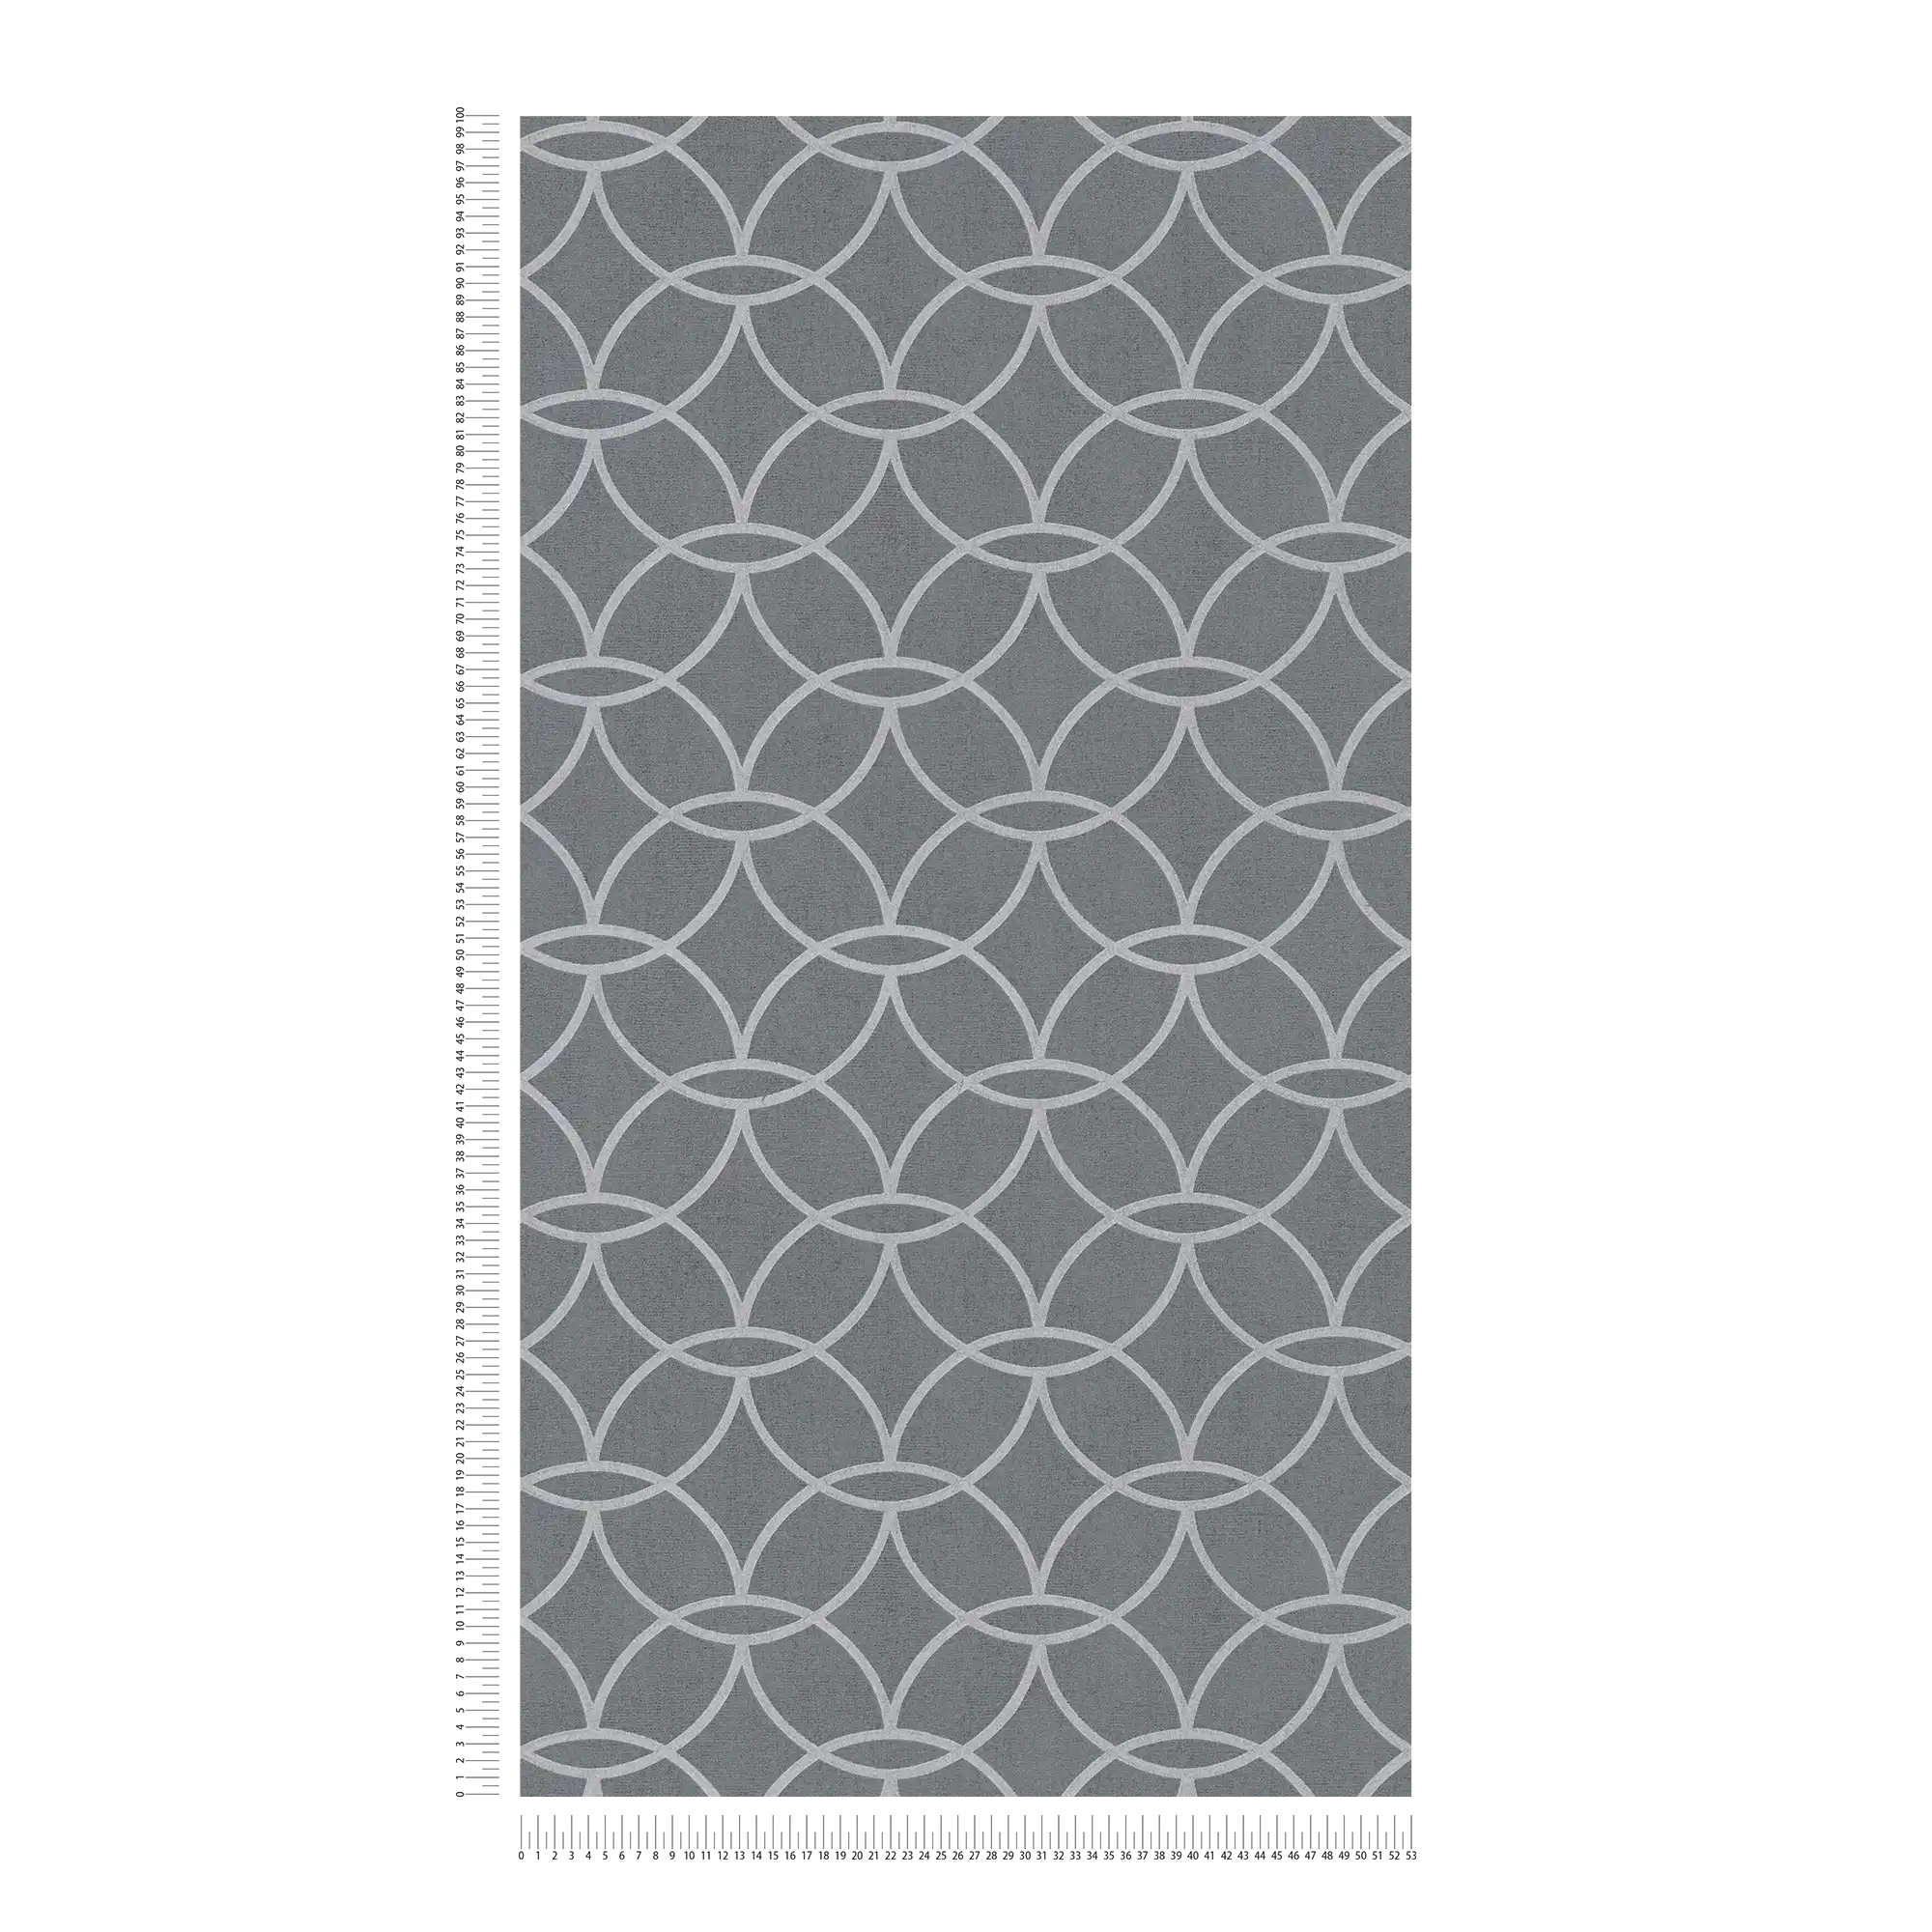             Grijs patroonbehang met zilver metallic patroon & glanseffect - Grijs, Metallic
        